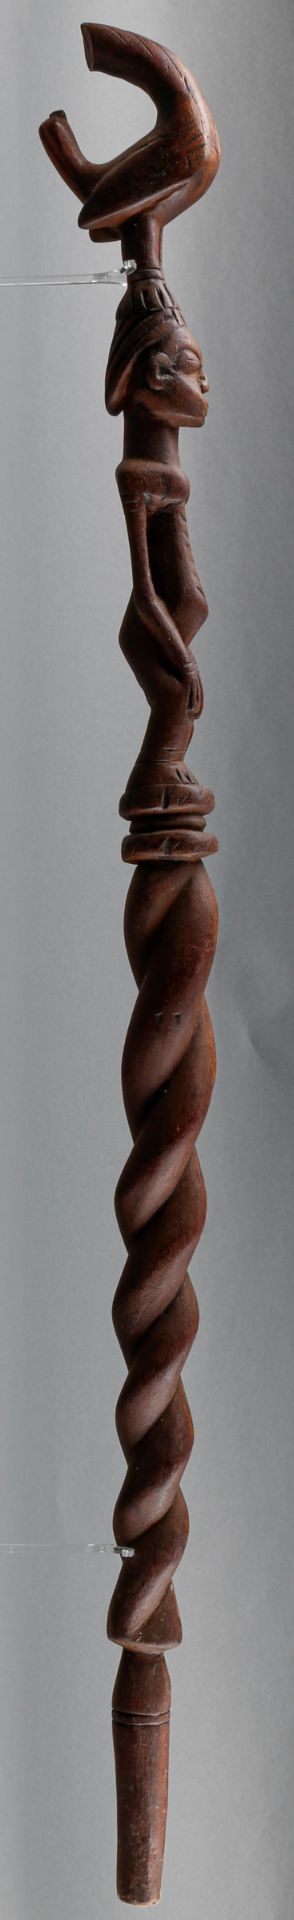 figürlich beschnitzter Gehstock der Dogon (Mali), 20. Jh. - Image 2 of 3